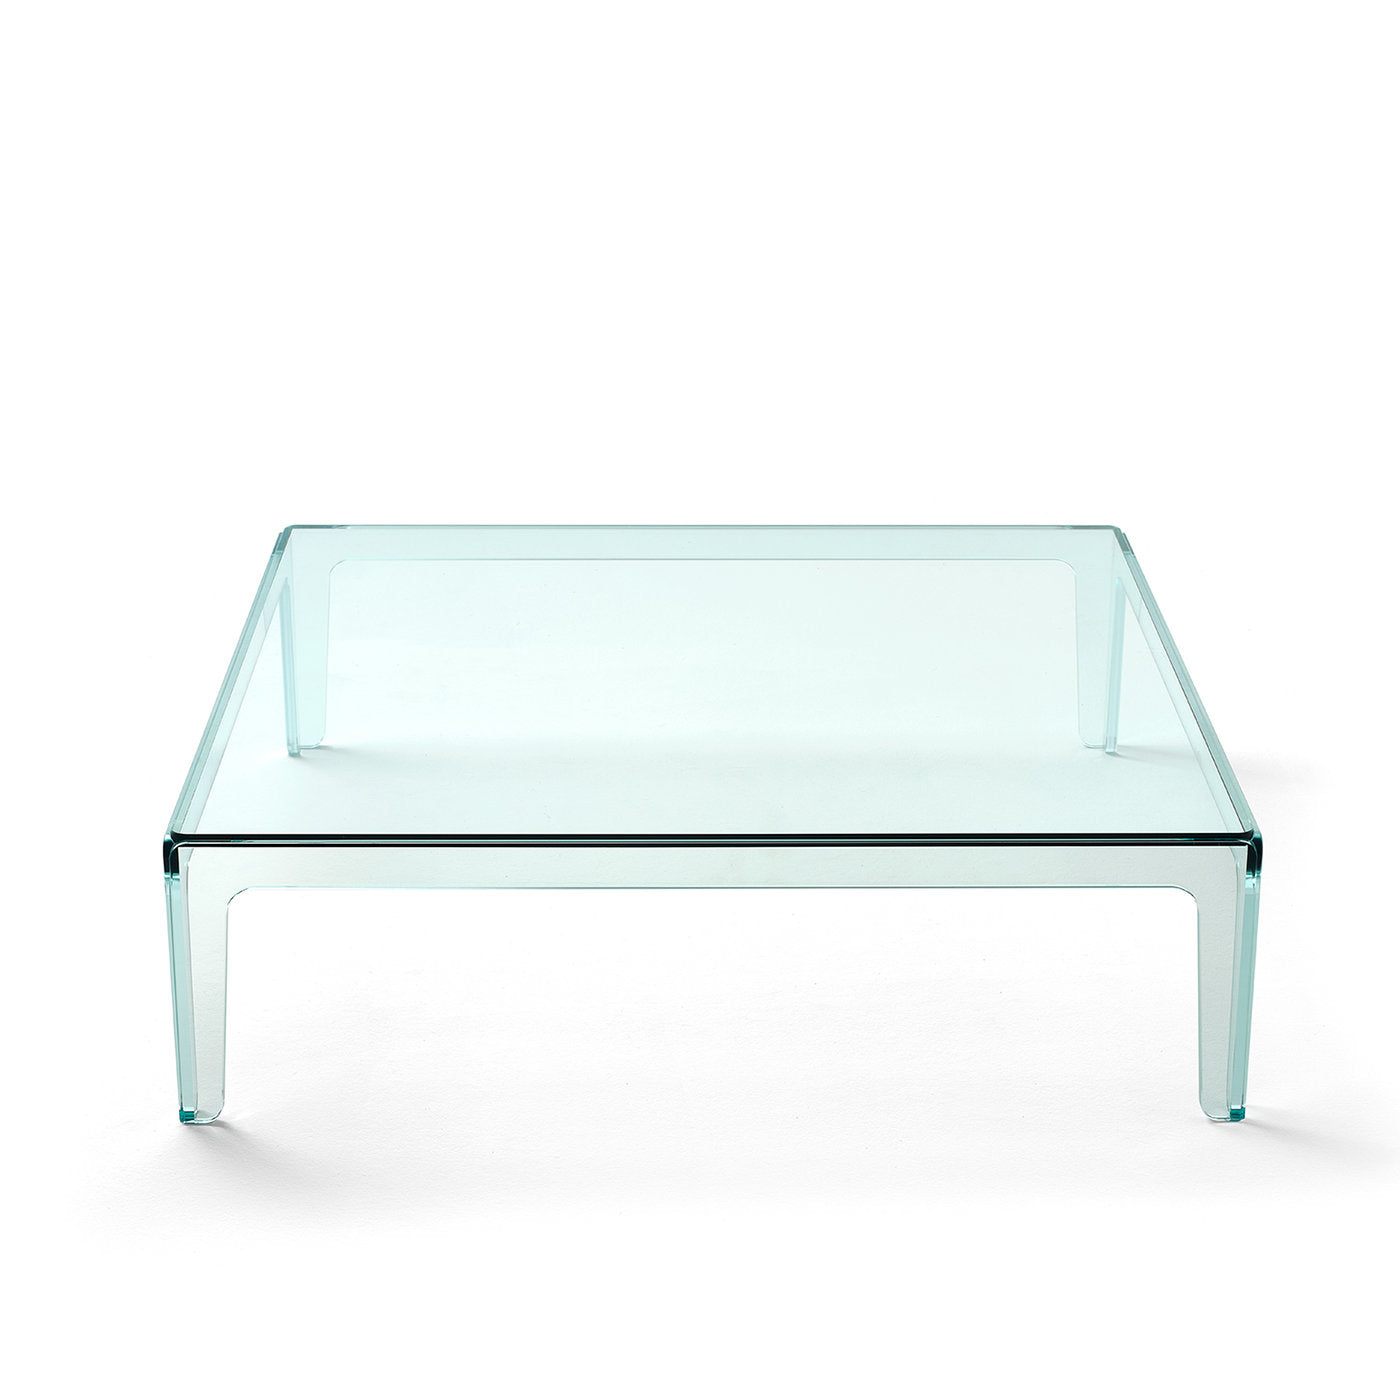 Sio Glass Coffee Table by Alberto Colzani - Alternative view 1